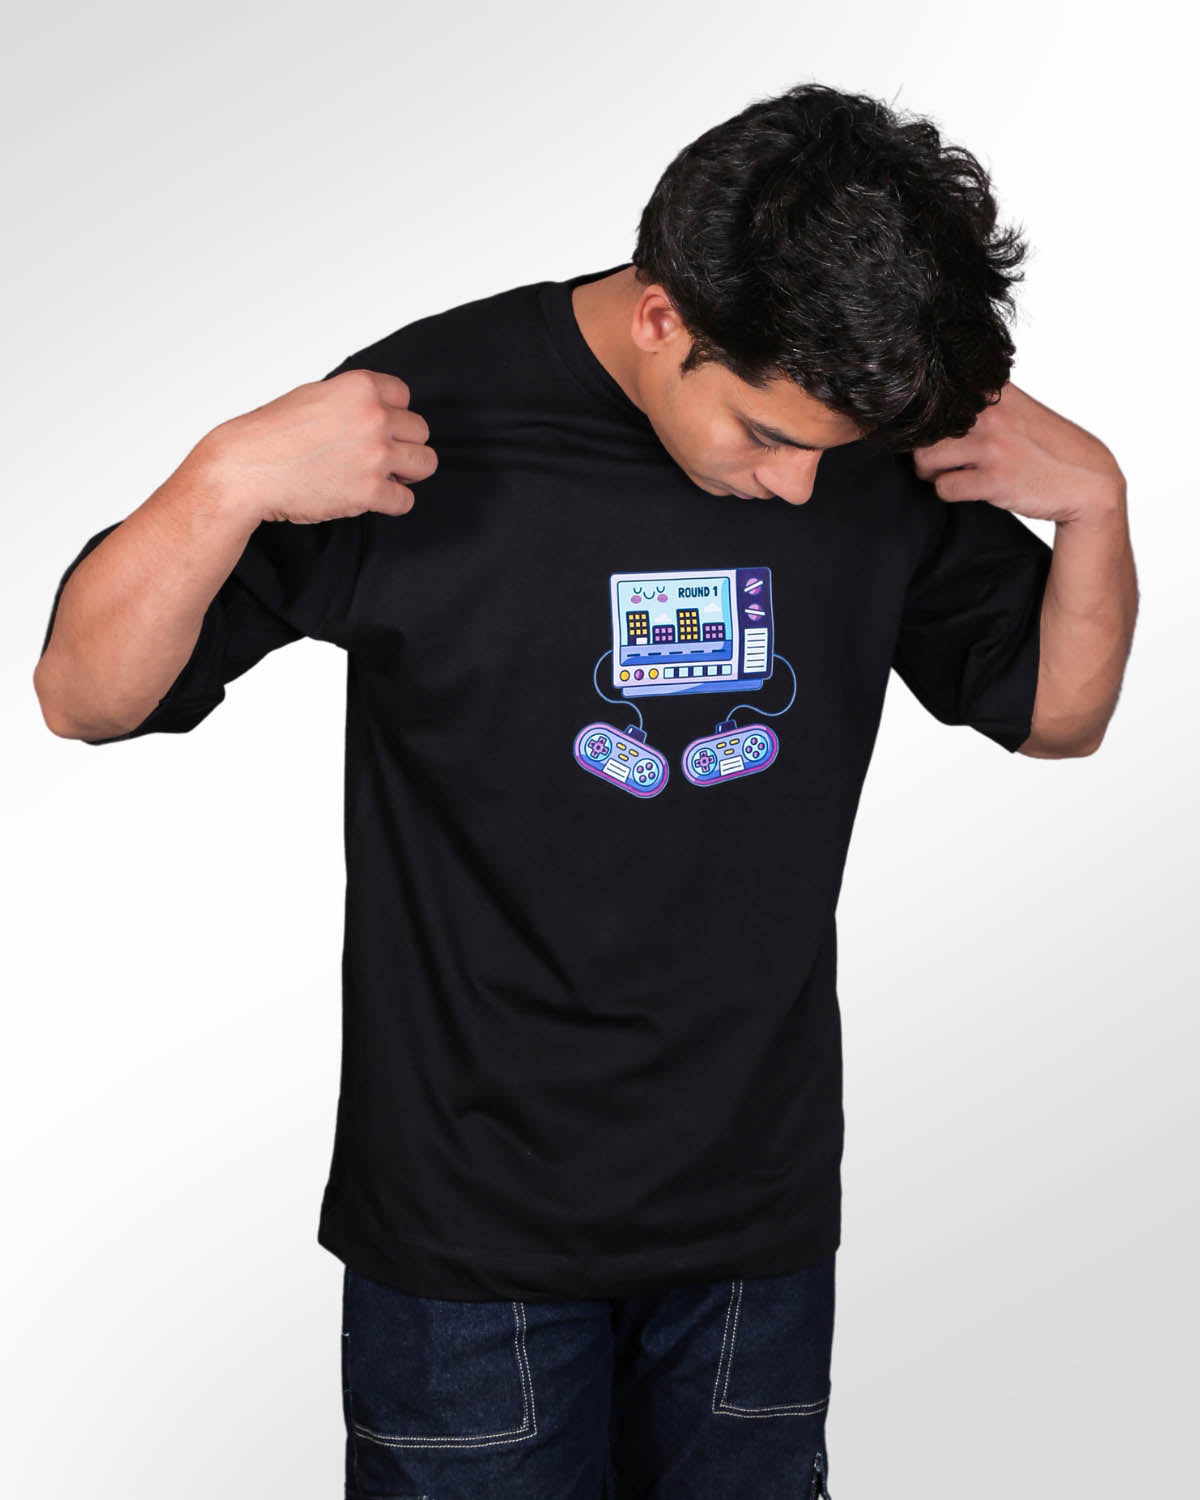 Retro Gamer Black Oversized T-shirt for Men’s